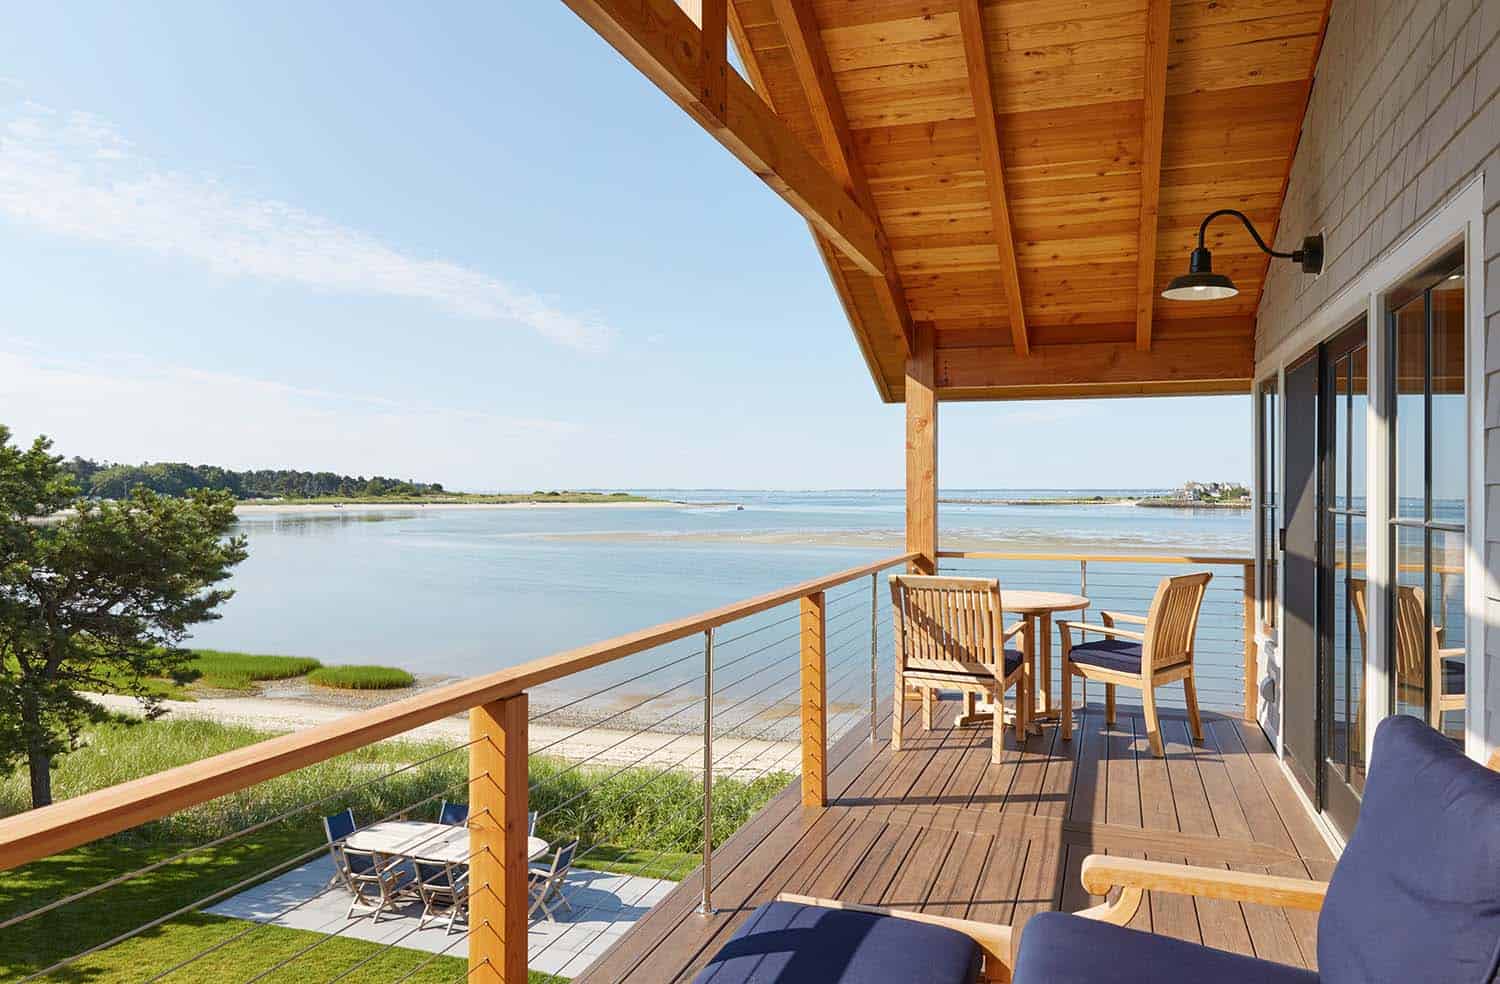 coastal home exterior deck overlooking the ocean